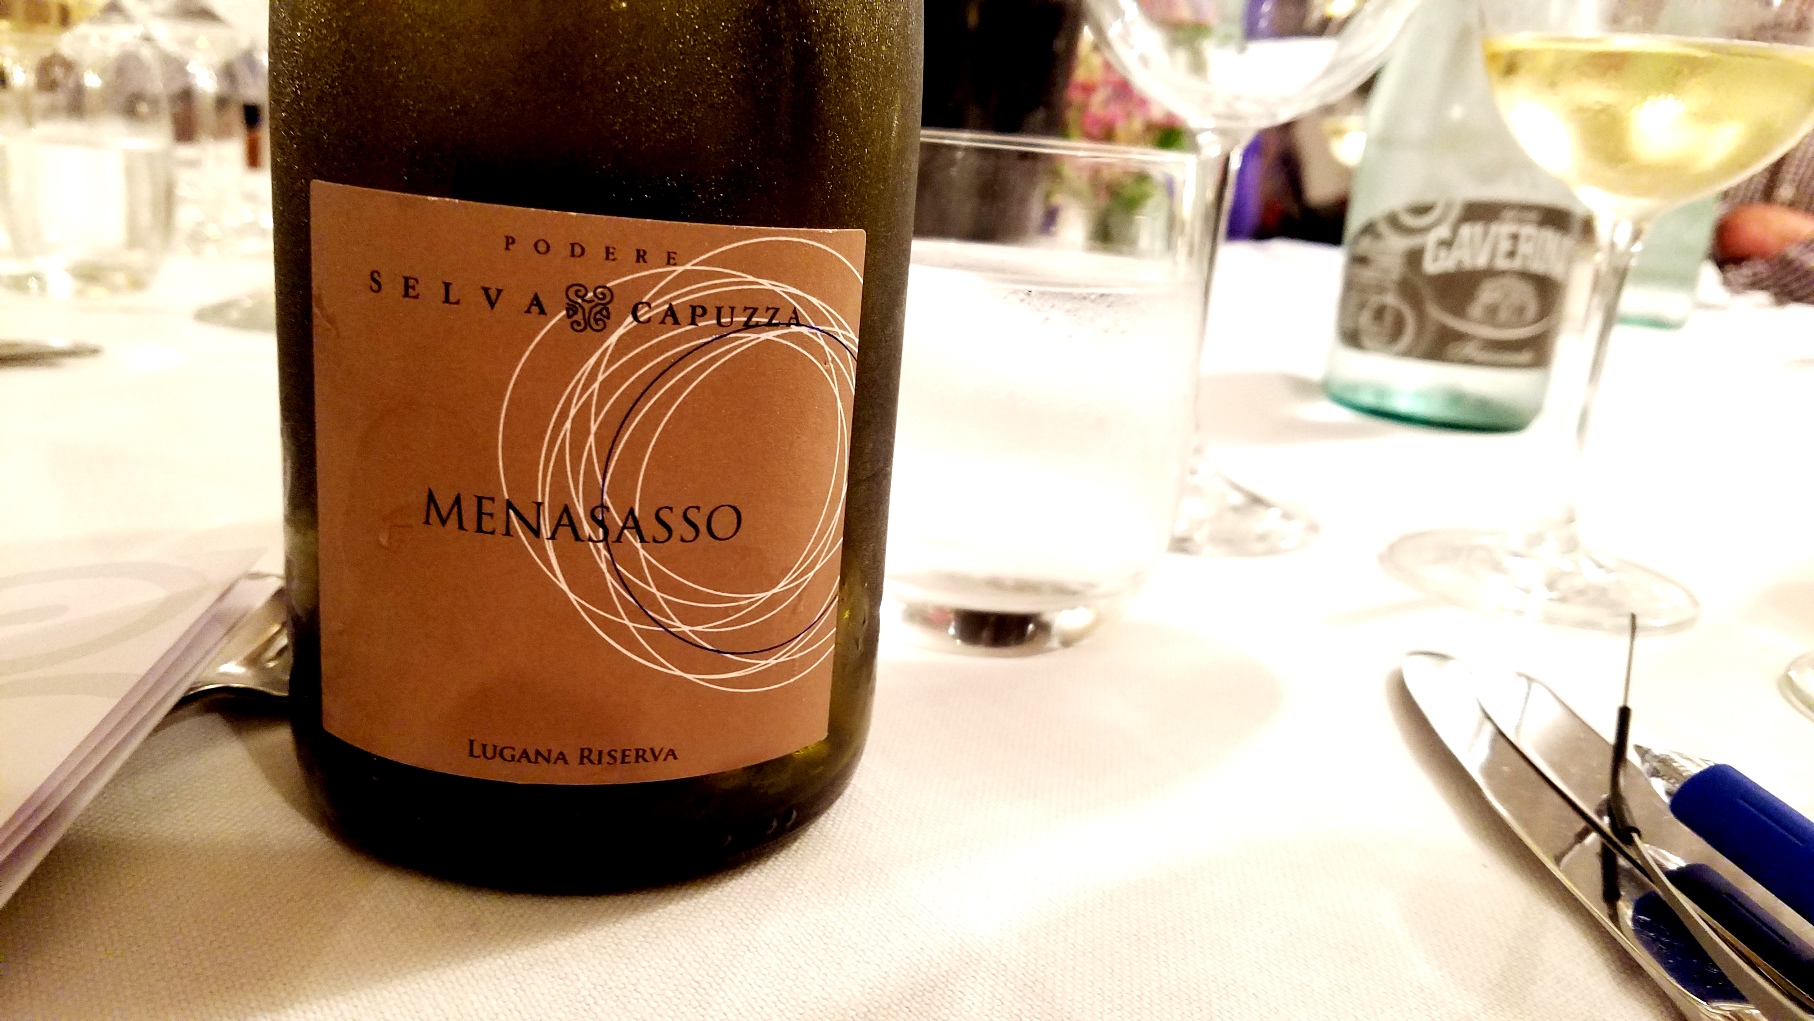 Selva Capuzza, Lugana Riserva Menasasso 2018, Lombardy, Italy, Wine Casual